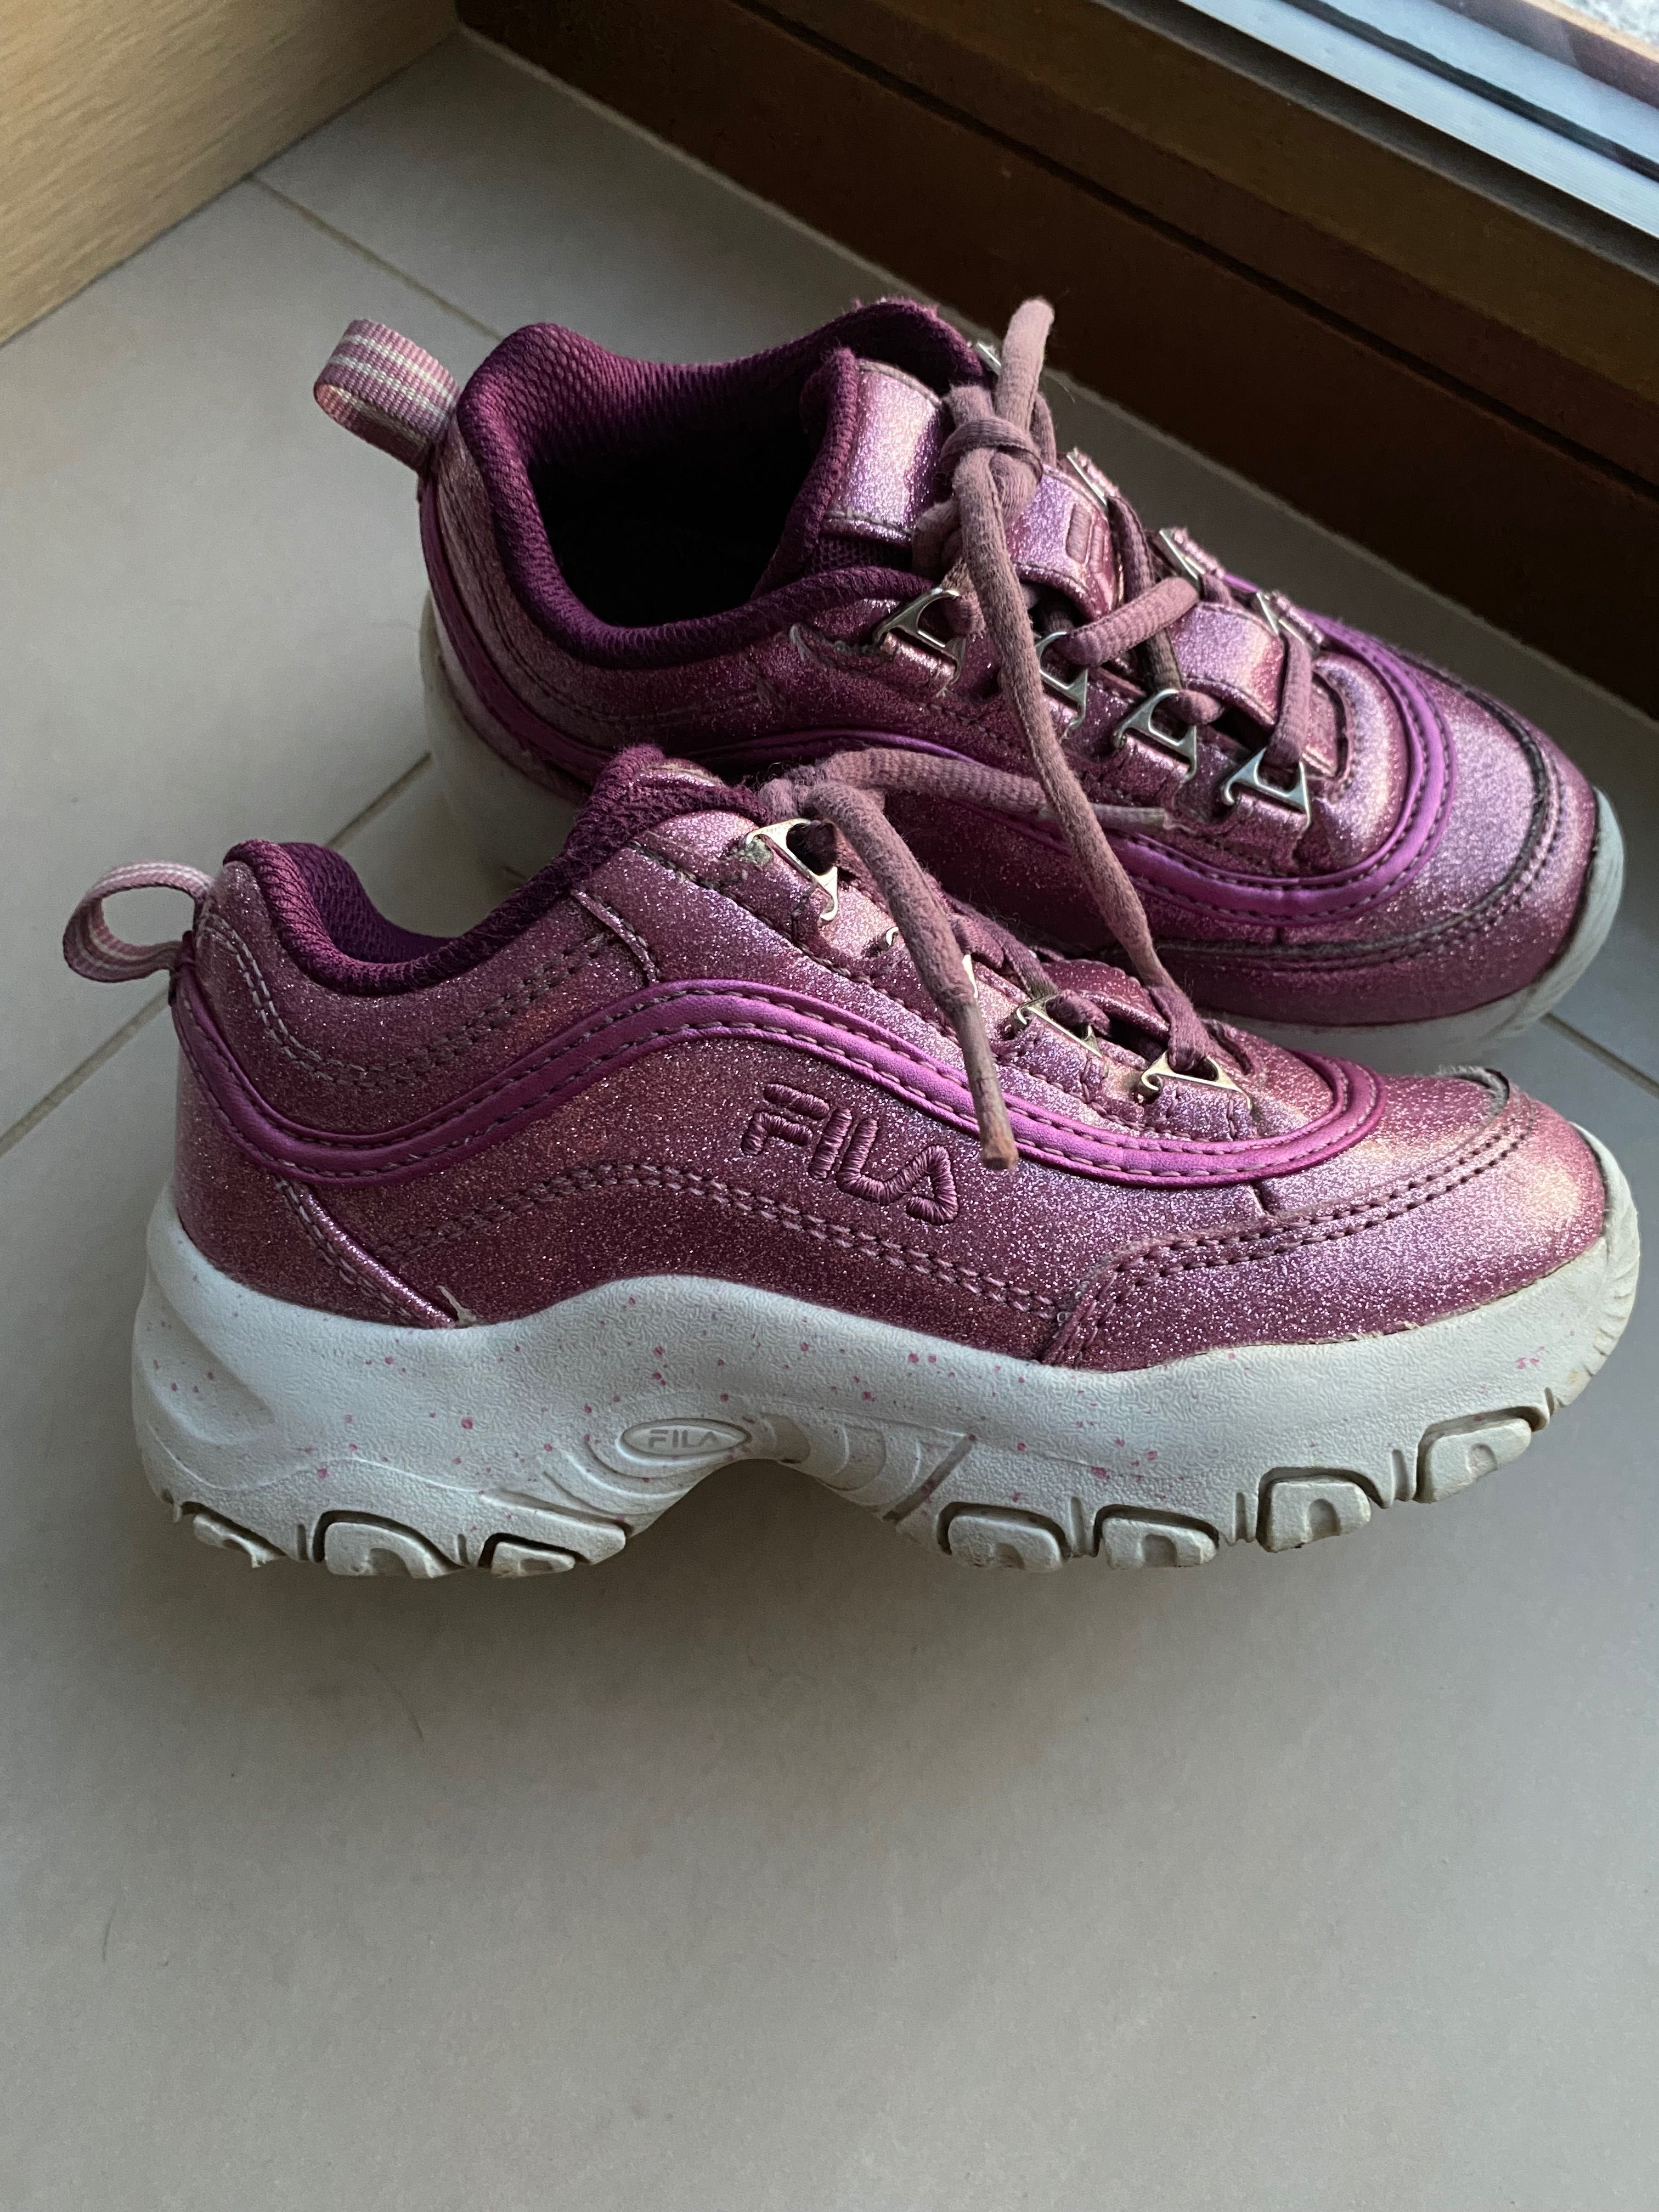 Buty, sneakersy Fila Disruptor dziecięce, r. 30 (19 cm)